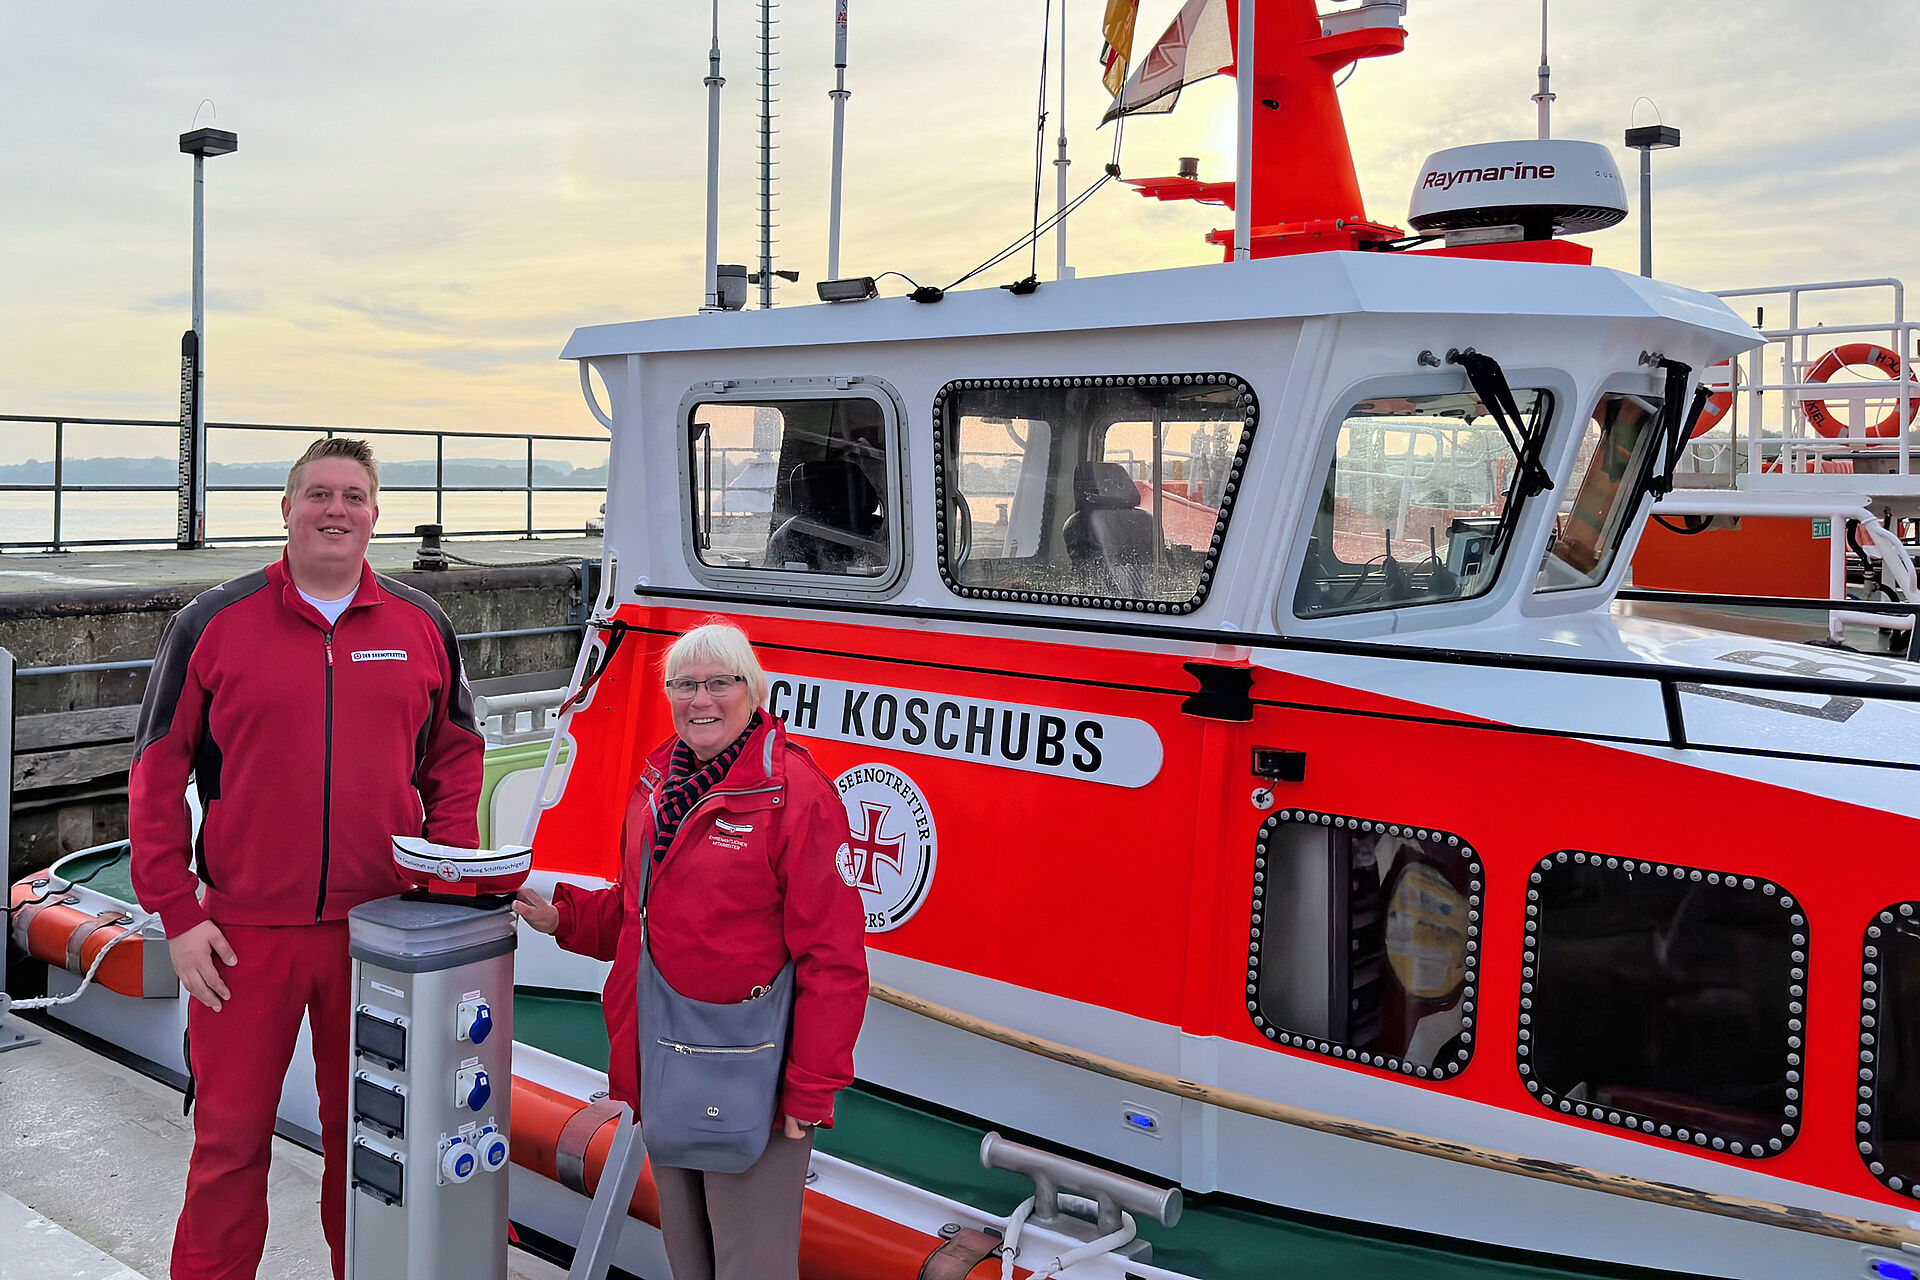 Vormann Patrick Morgenroth und die ehrenamtliche Mitarbeiterin Petra Petersen vor dem Seenotrettungsboot ERICH KOSCHUBS mit einem DGzRS-Sammelschiffchen vor sich